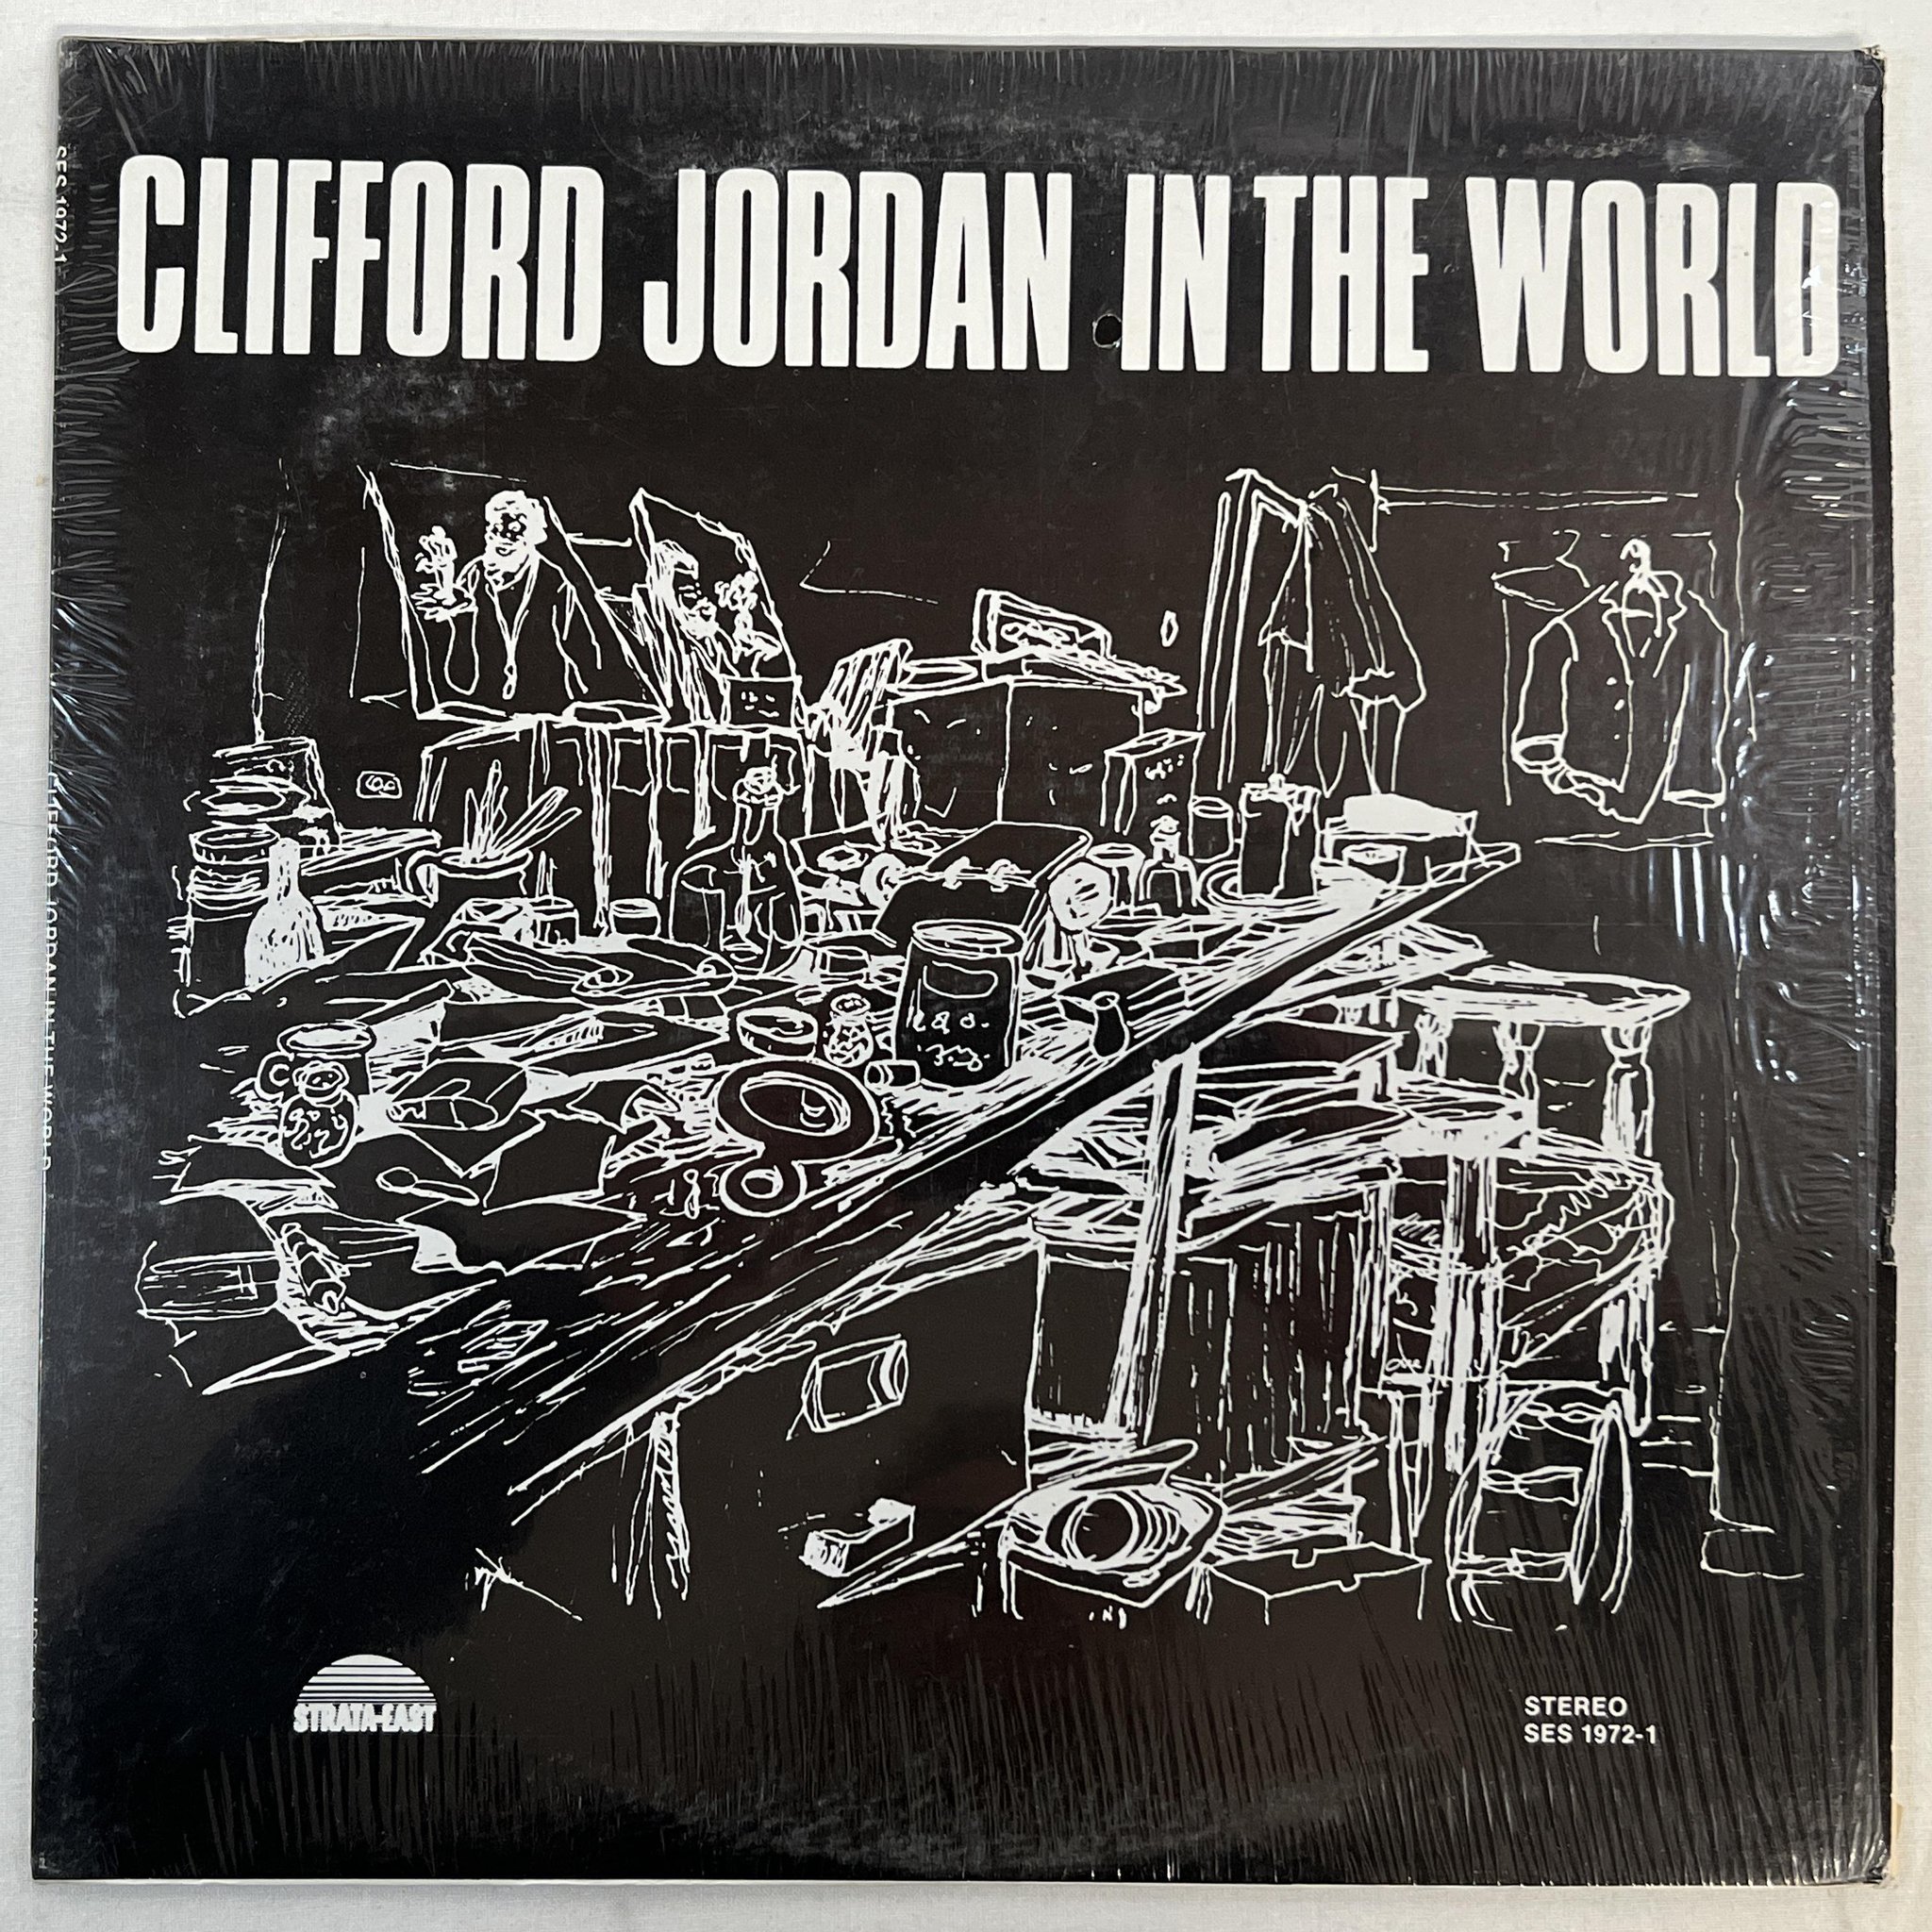 Omslagsbild för skivan CLIFFORD JORDAN in the world LP -72 US STRATA EAST SES 1972-1 *** MEGA RARE ***